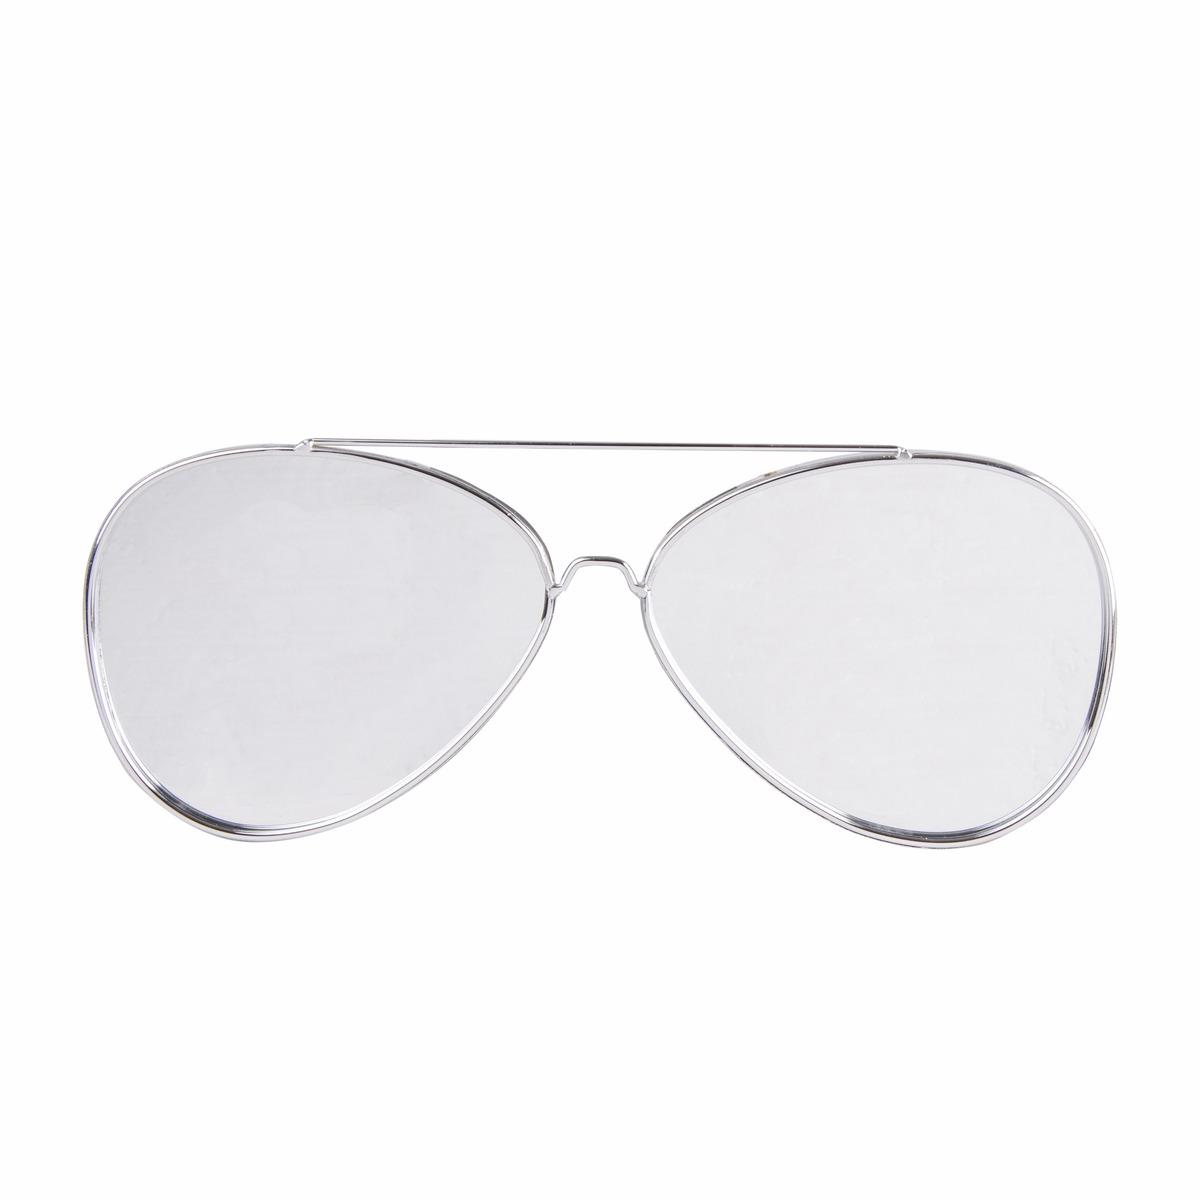 Miroir en forme de lunettes - 40 x 15 cm - Blanc